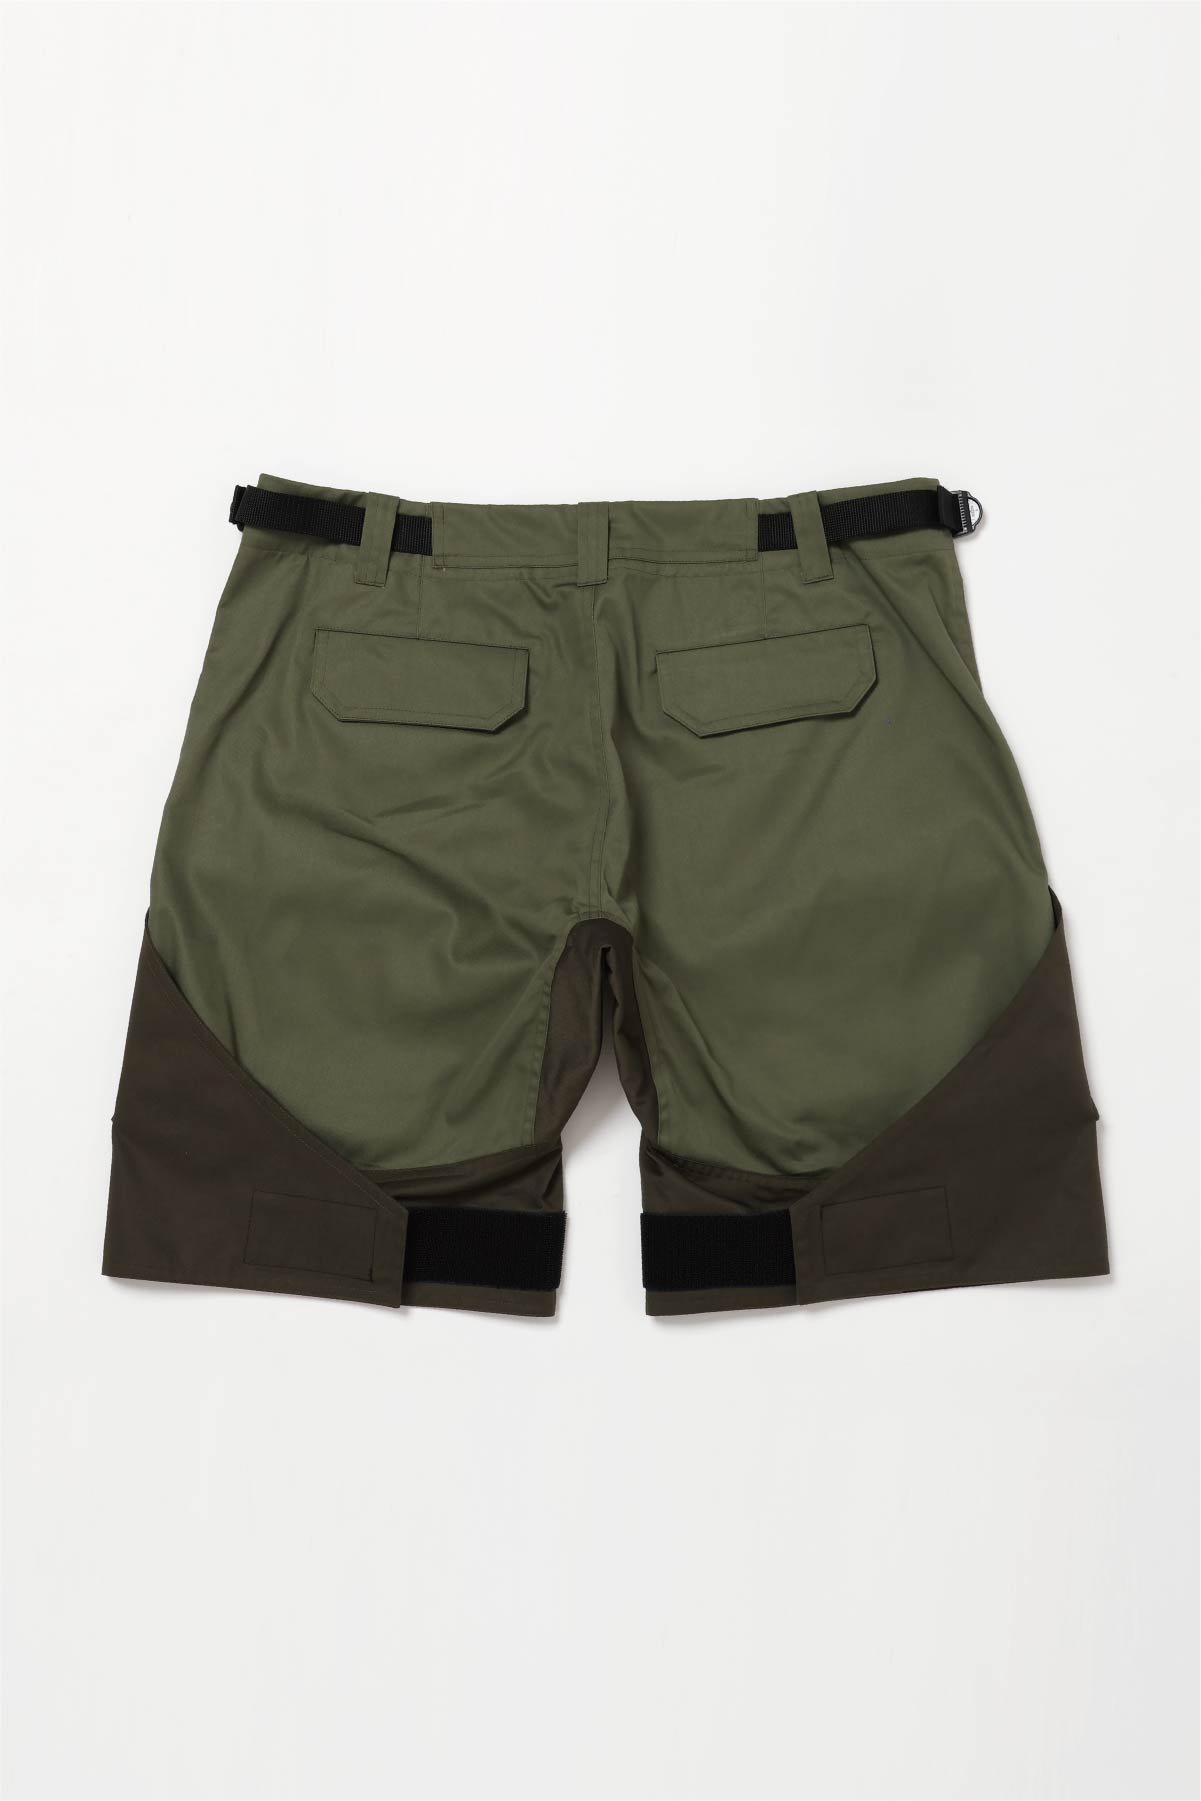 Flap Shorts【Olive × Khaki】